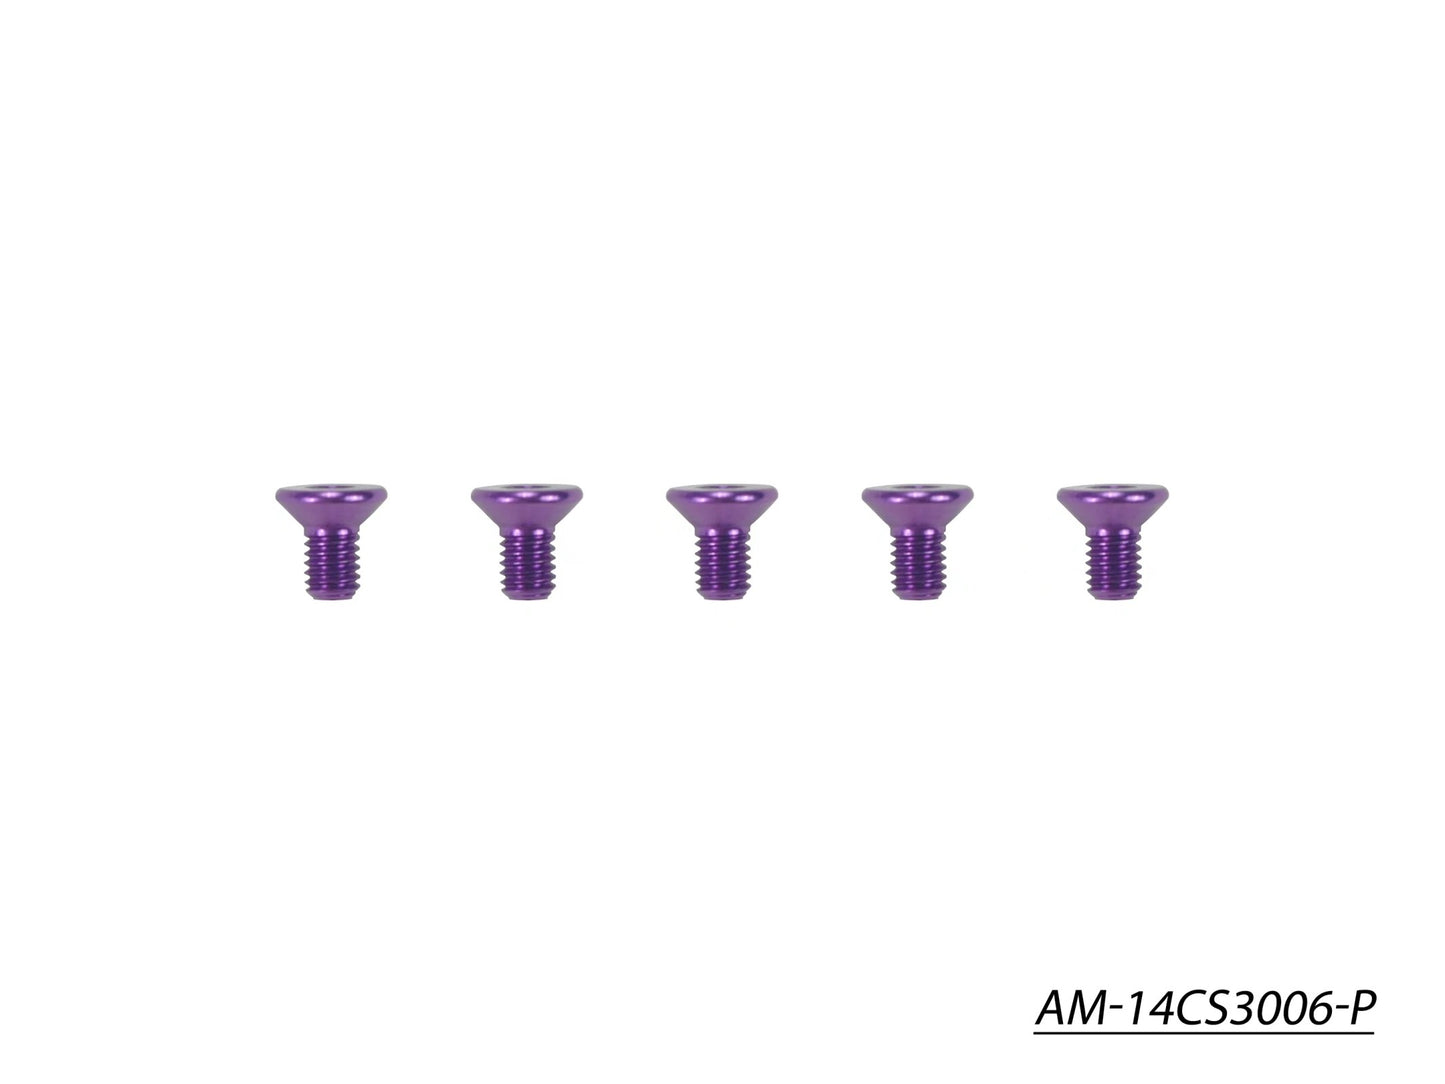 Alu Screw Allen Countersunk M3X6 Purple (7075) (5) (AM-14CS3006-P)